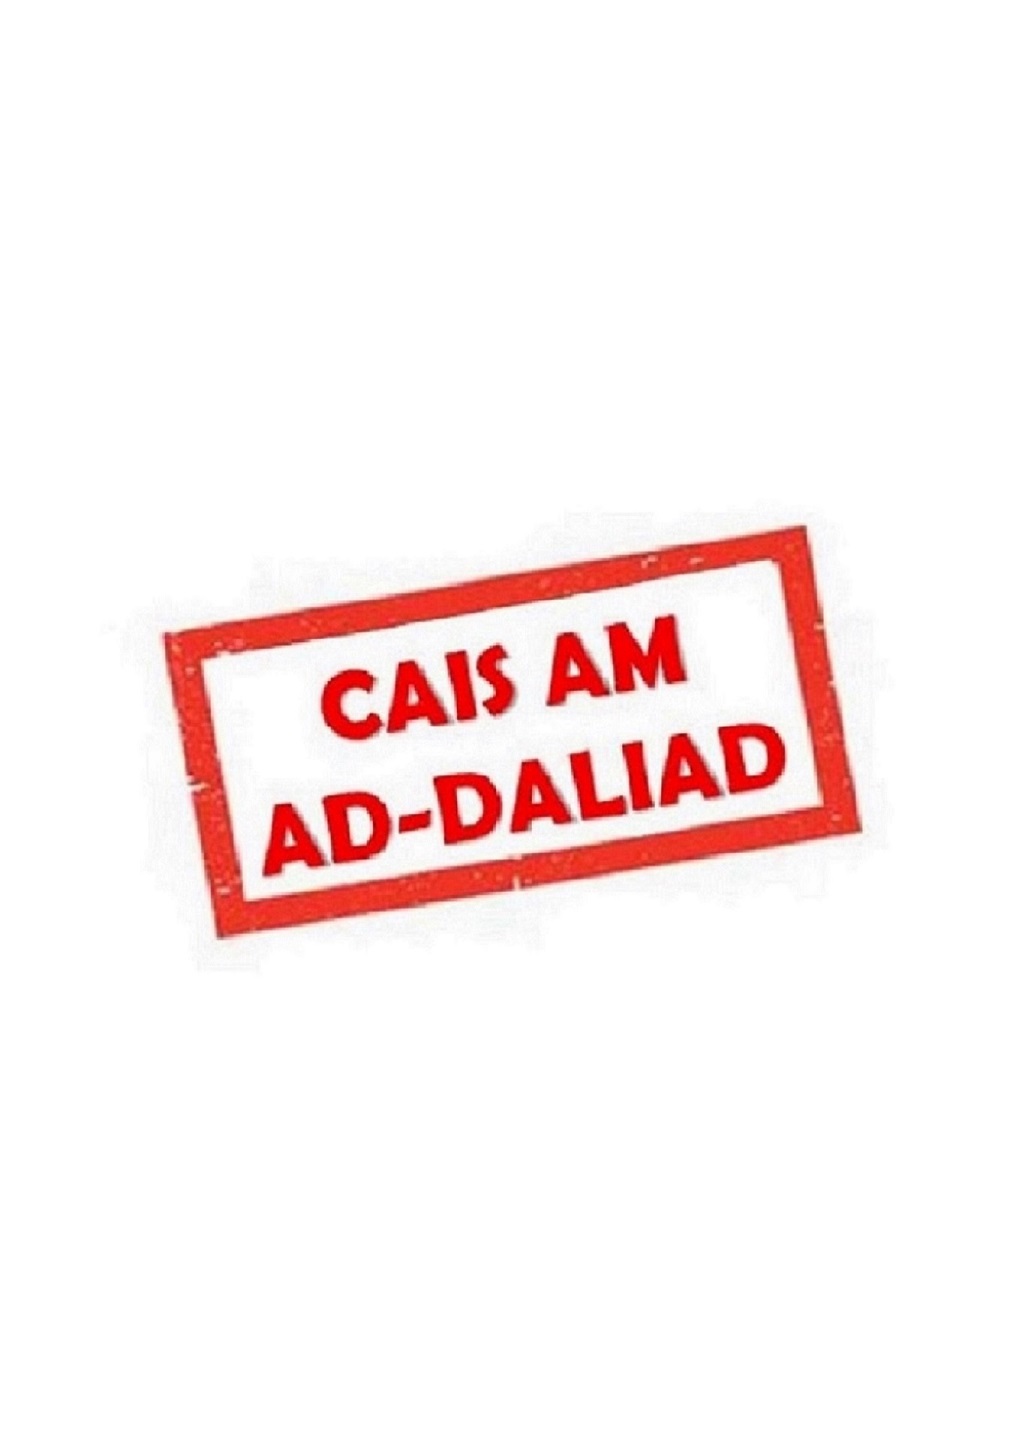 CAIS AM AD-DAL